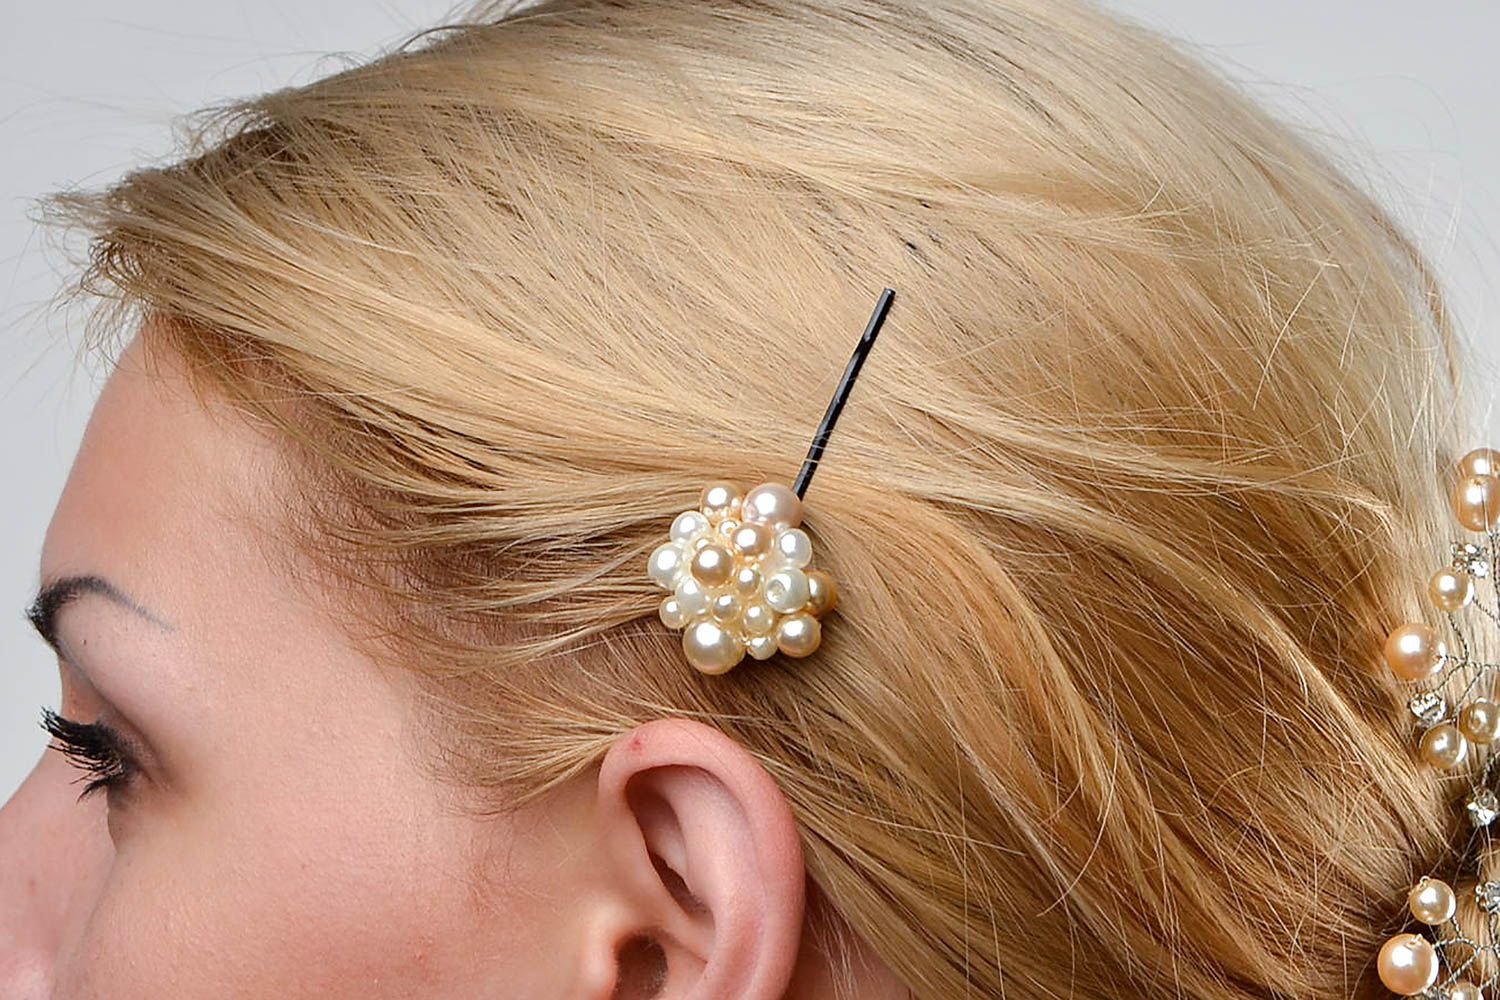 Handmade hair pin designer hair accessory gift ideas unusual hair pin for girls photo 1